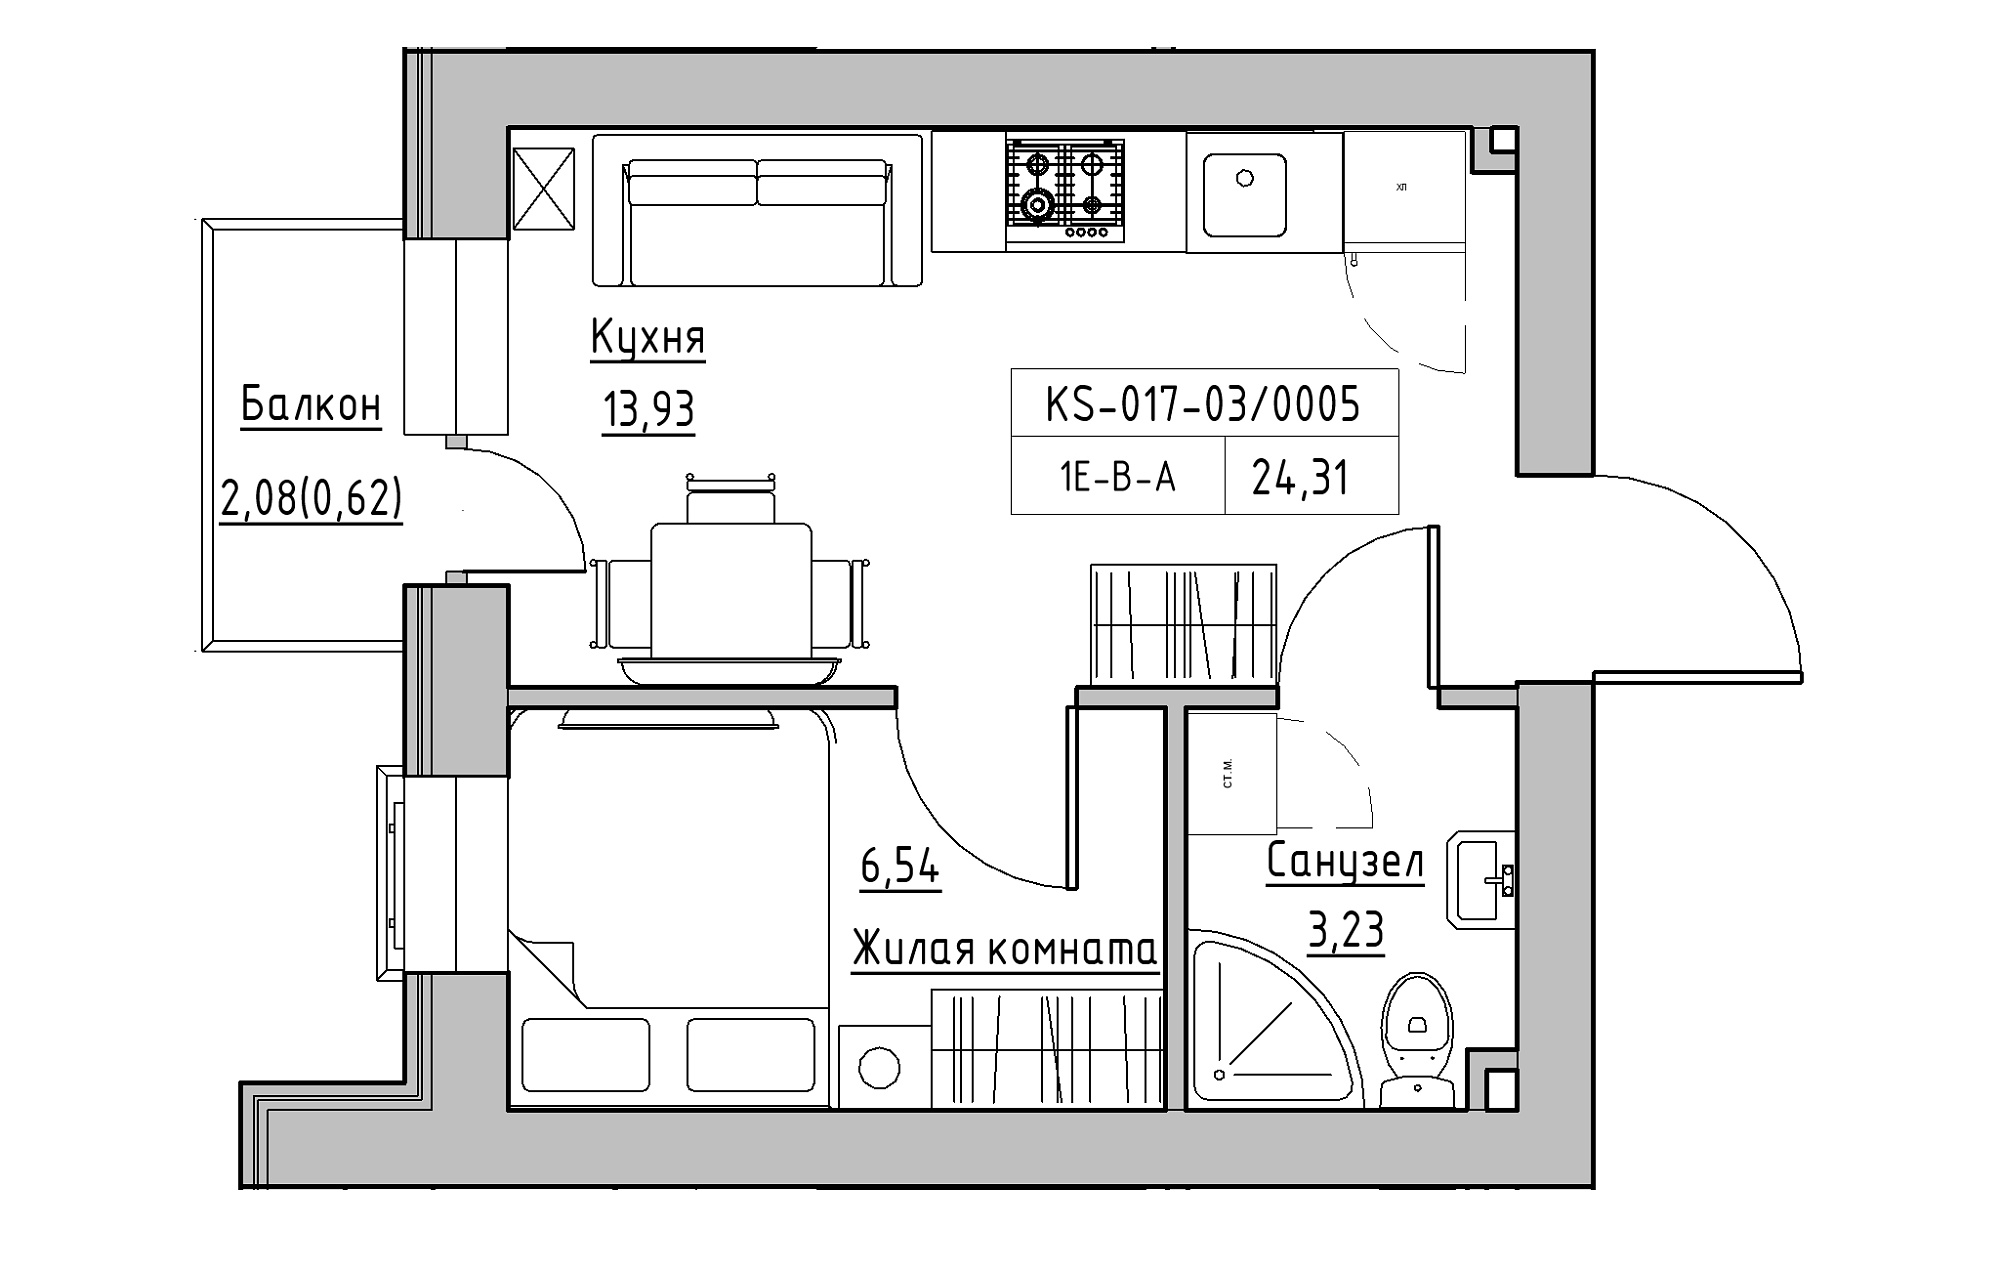 Планування 1-к квартира площею 24.31м2, KS-017-03/0005.